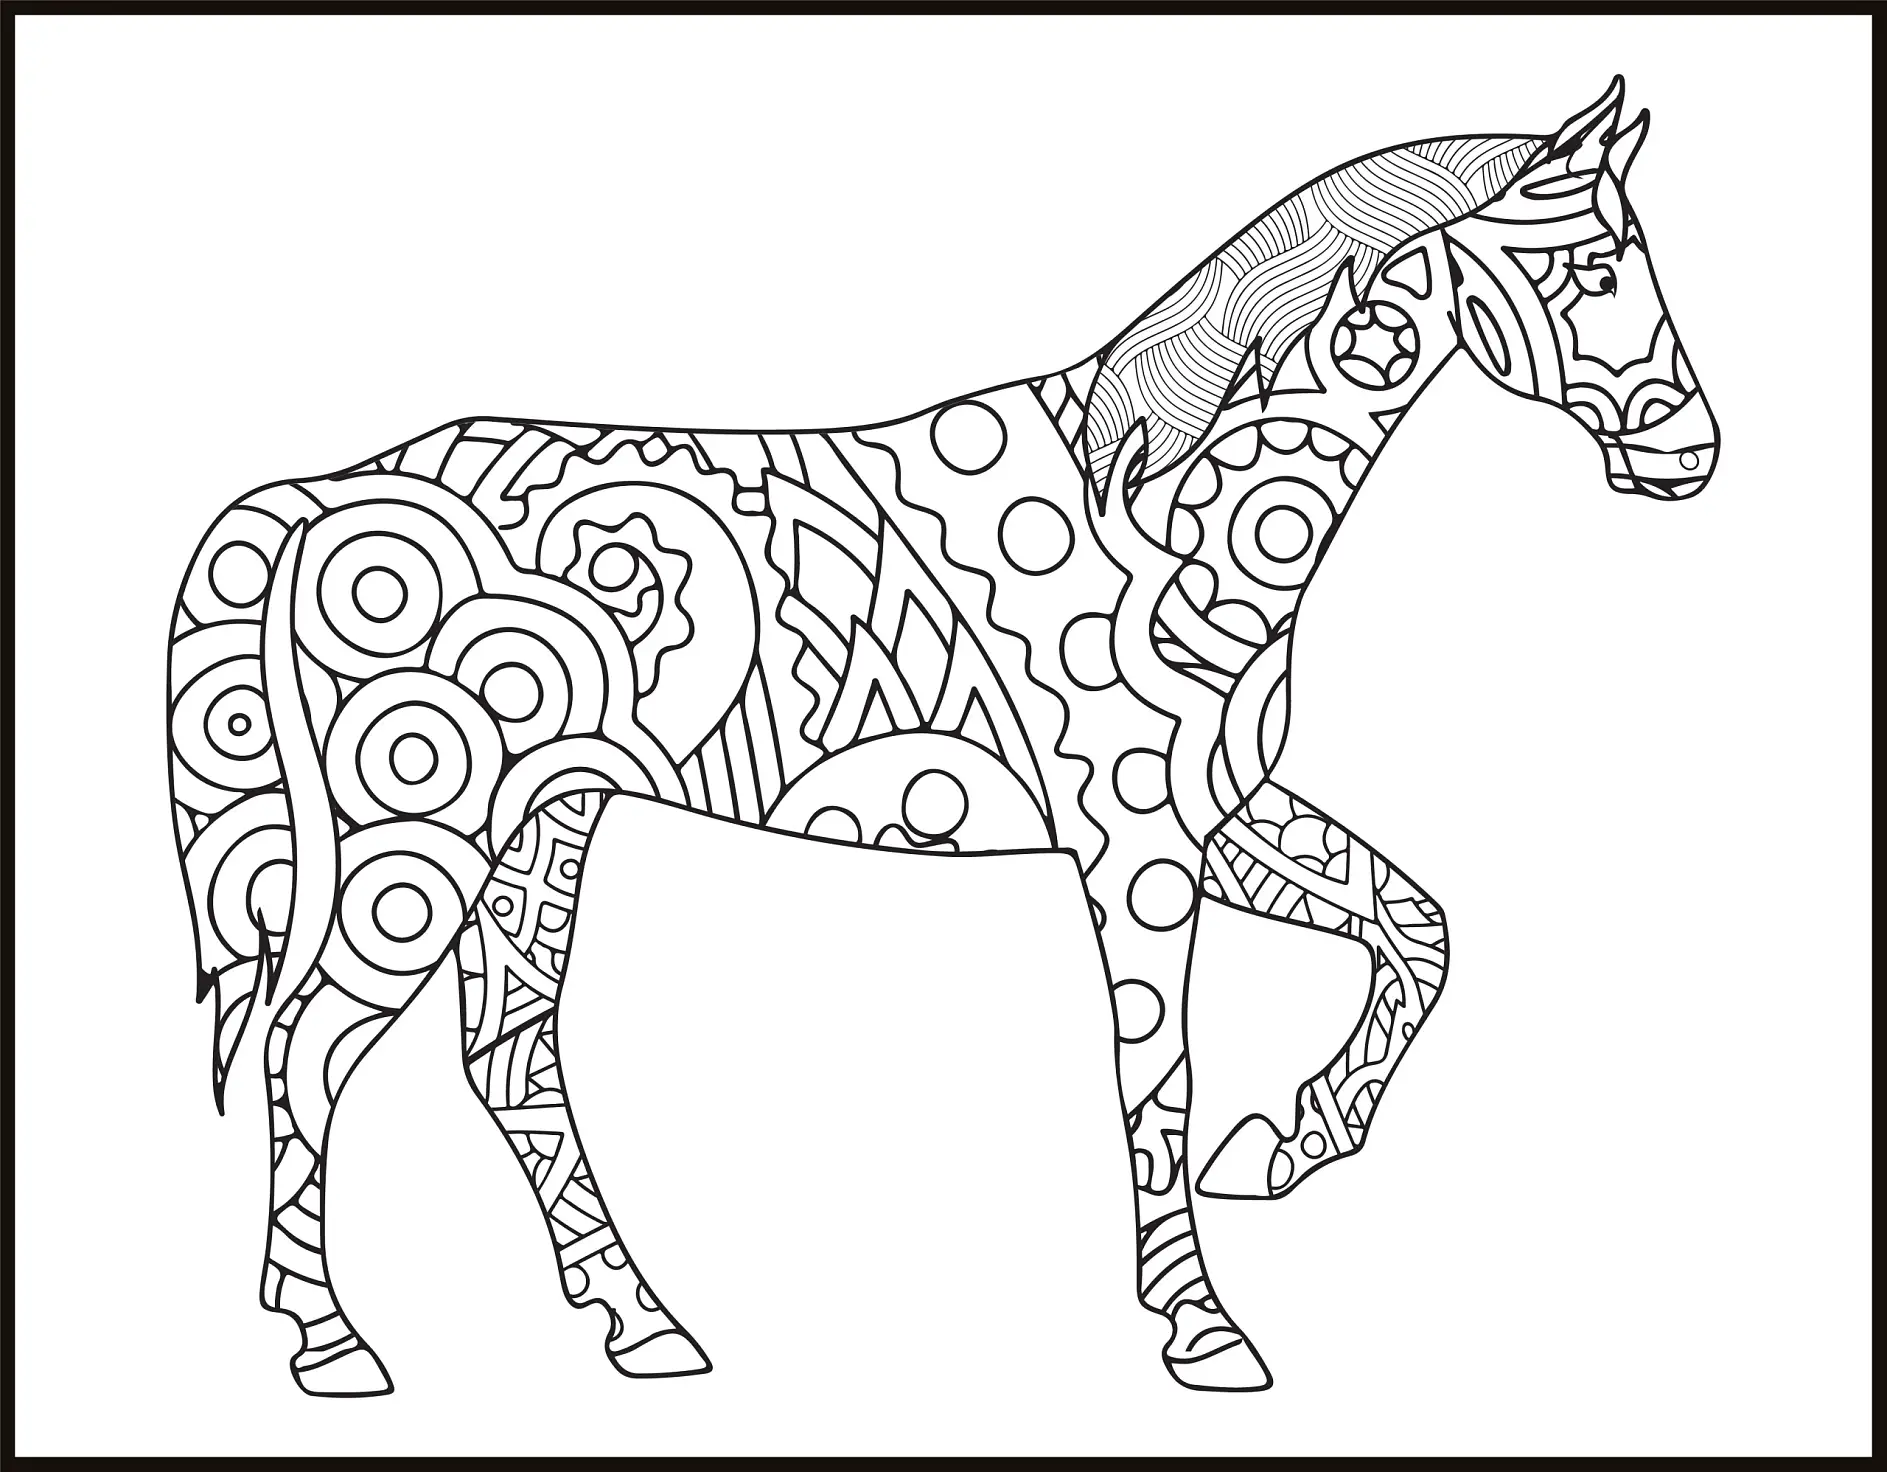 Ausmalbild Mandala mit Pferd und Kreismustern